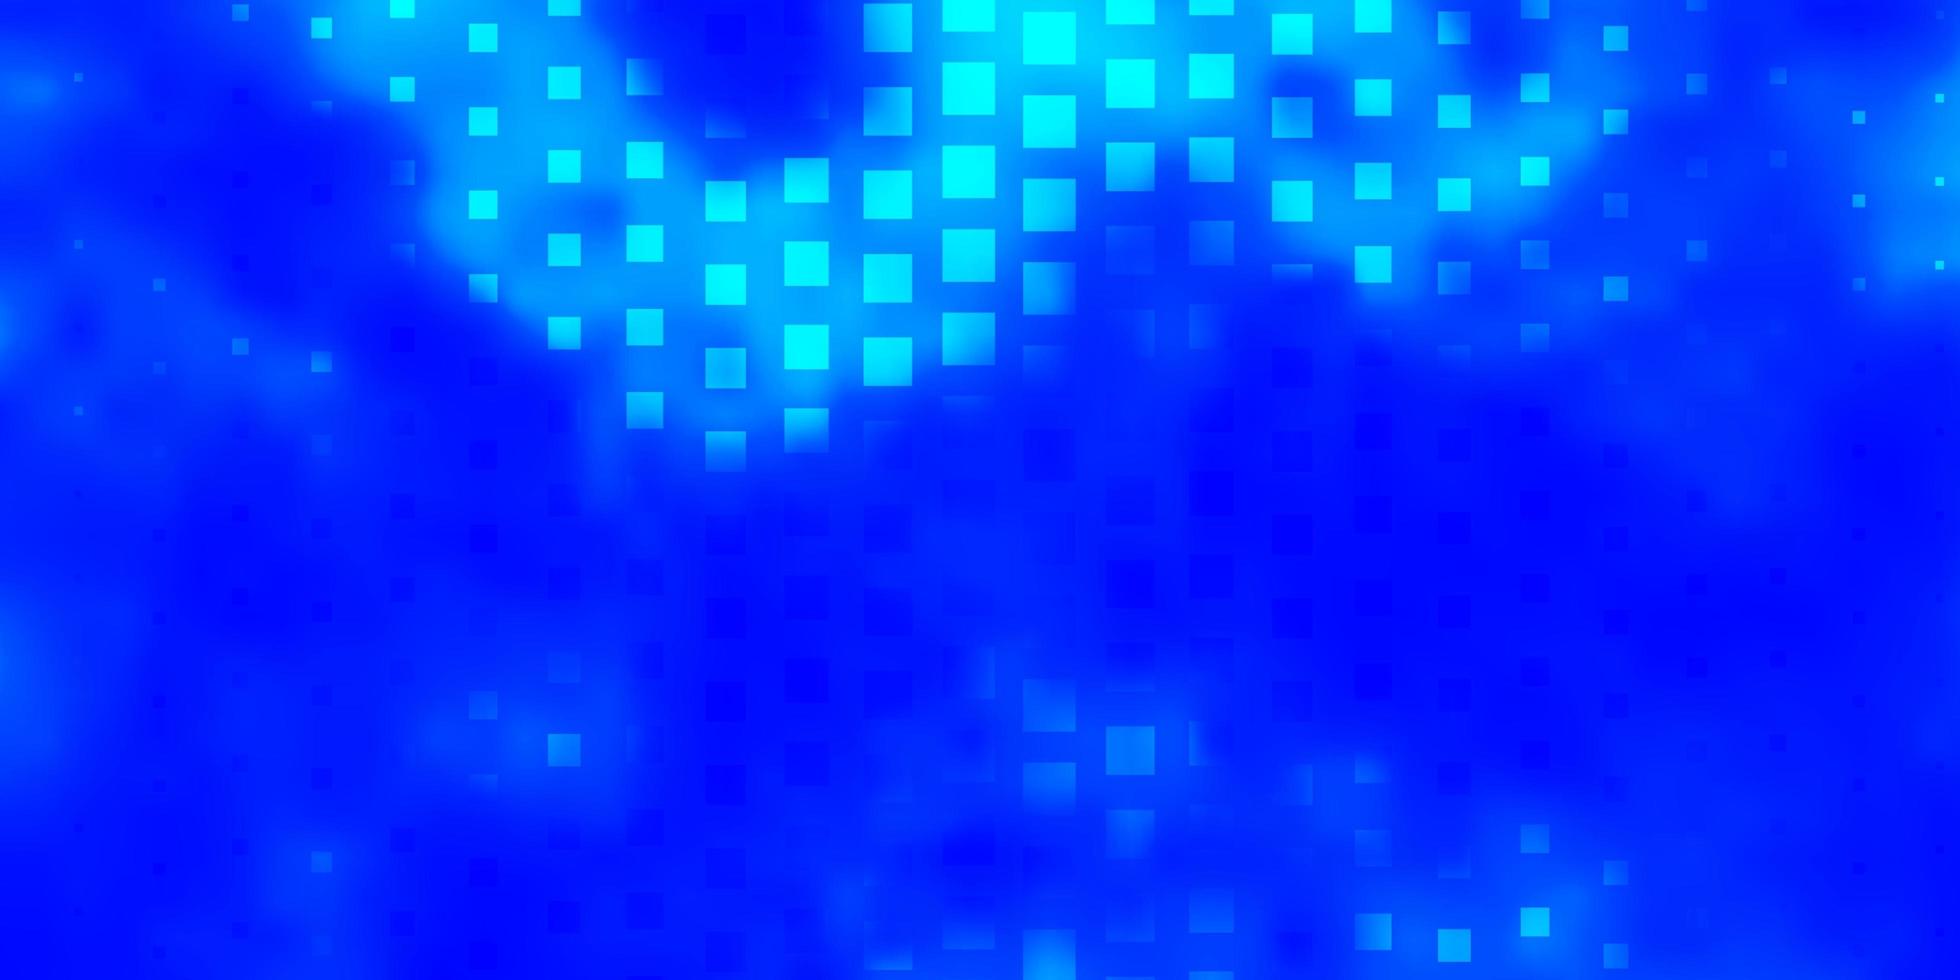 modelo de vetor azul claro em retângulos.